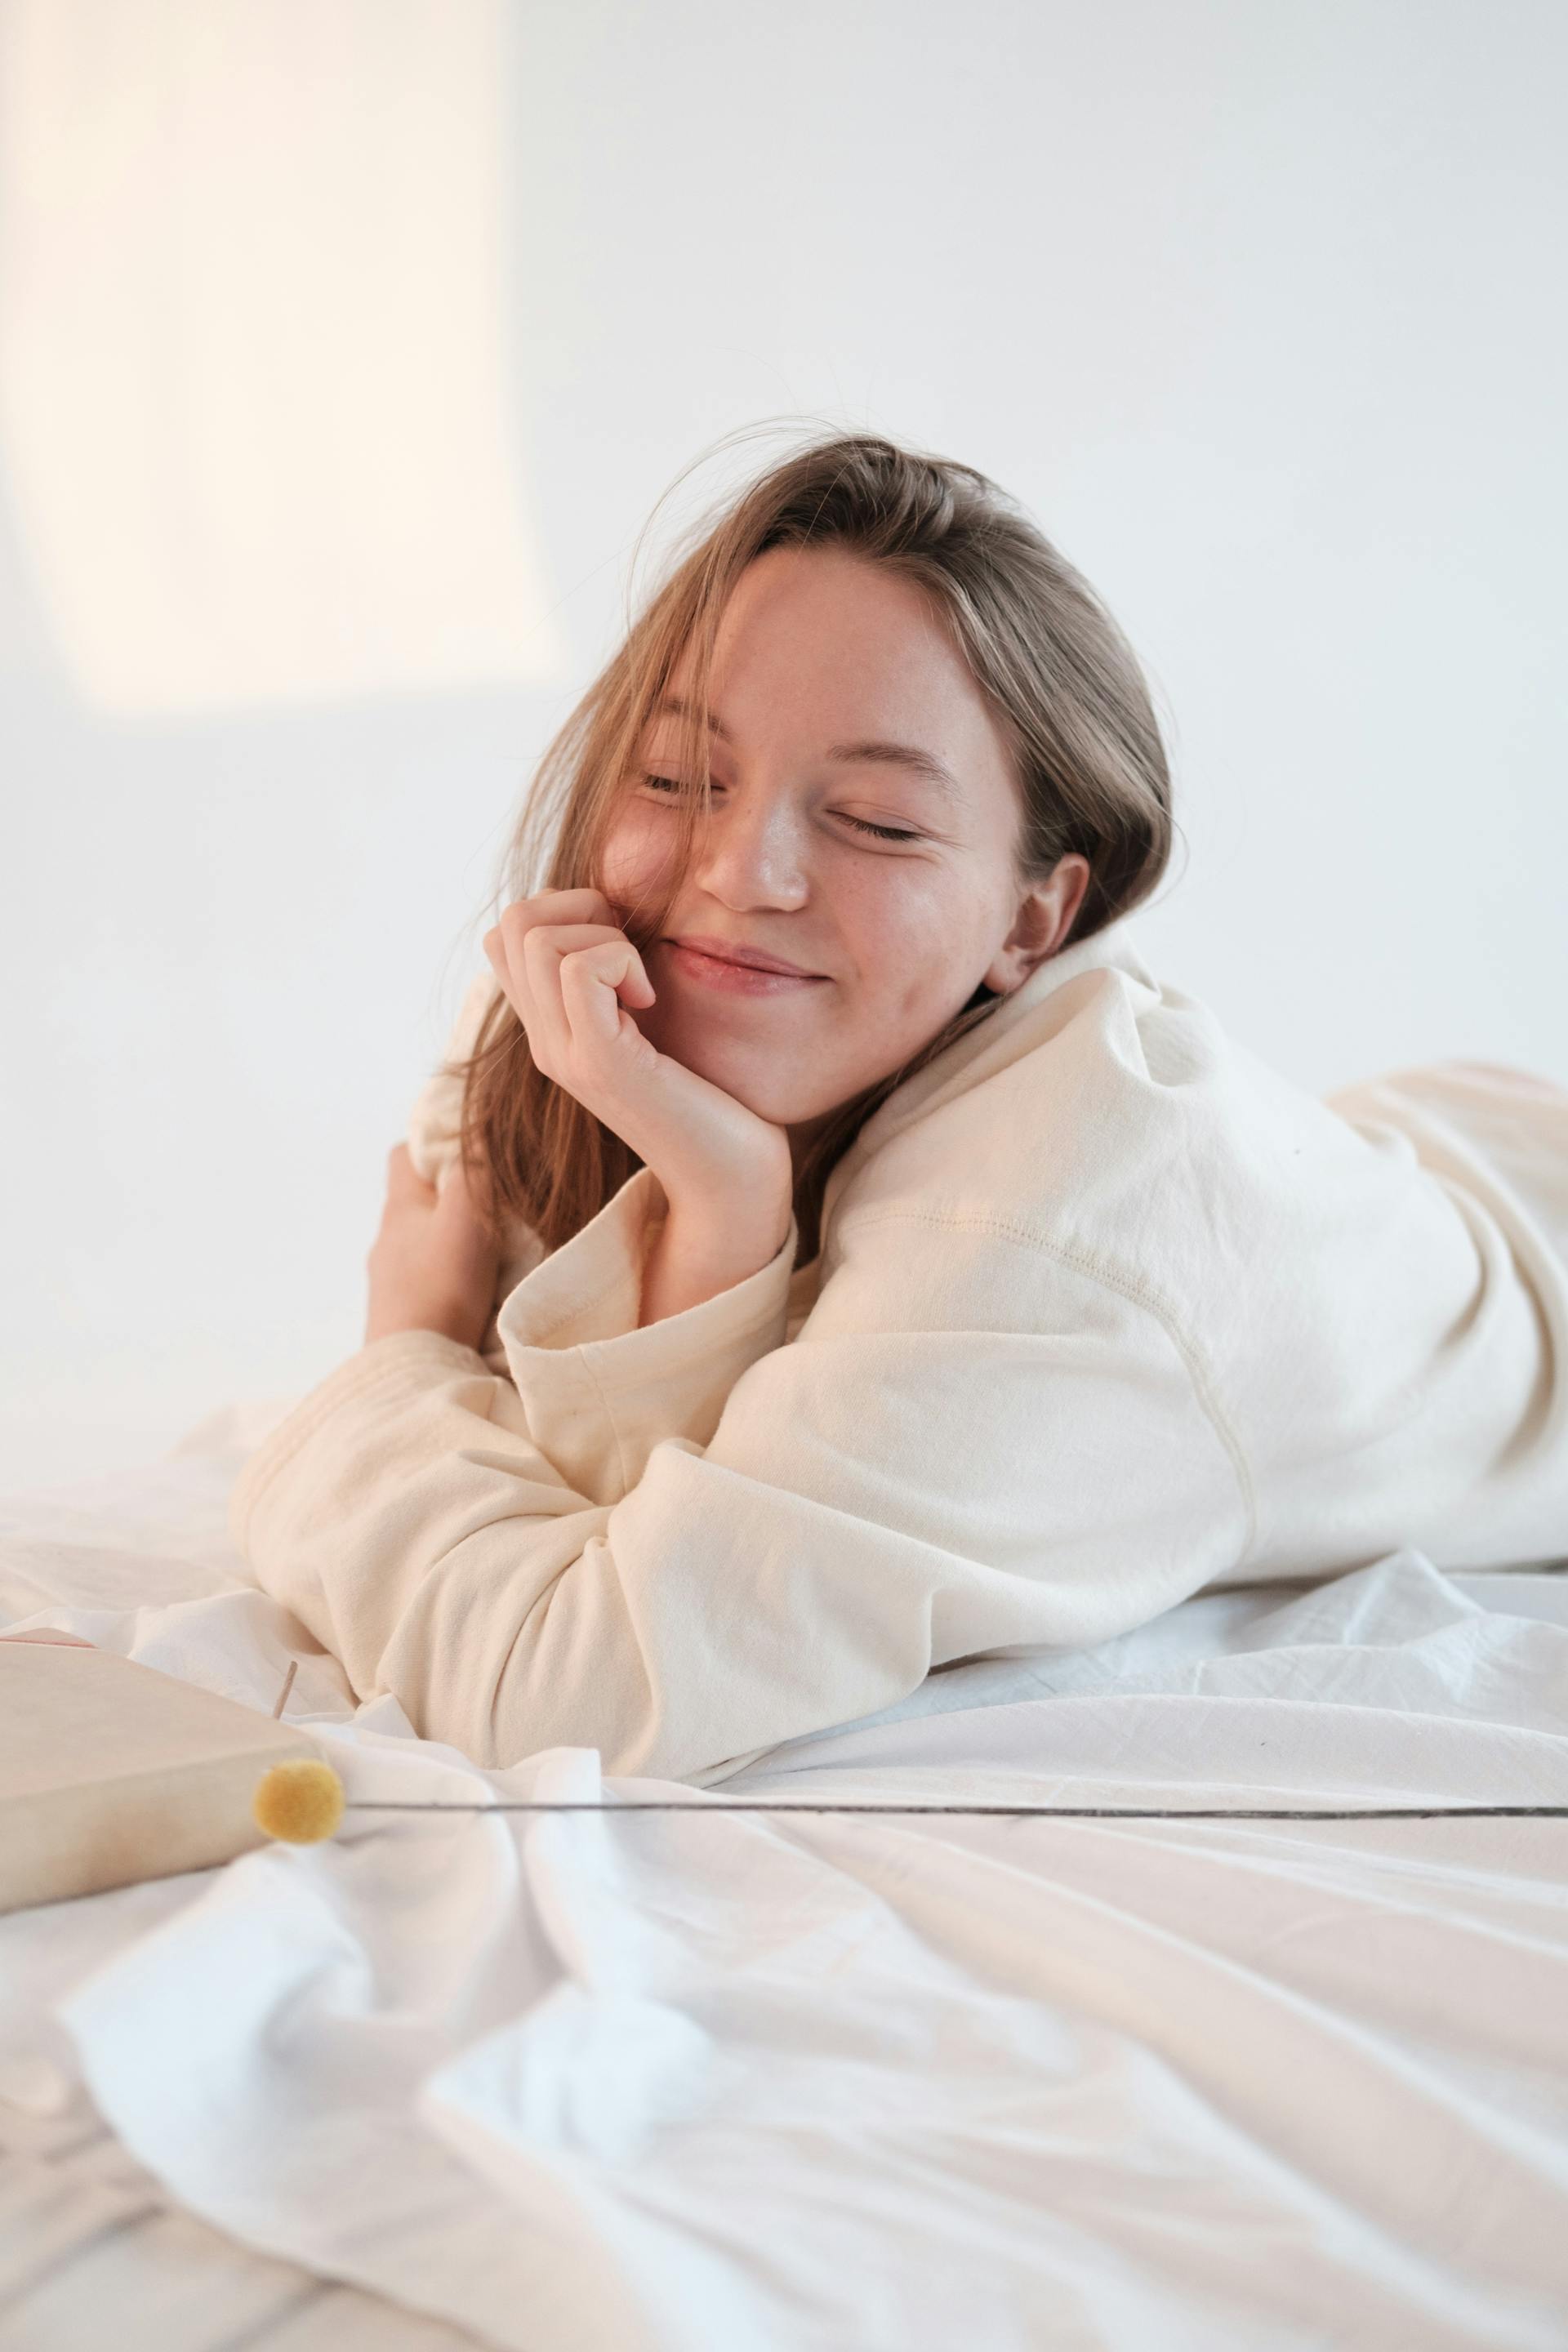 Una mujer sonriente descansando en la cama con los ojos cerrados | Fuente: Pexels